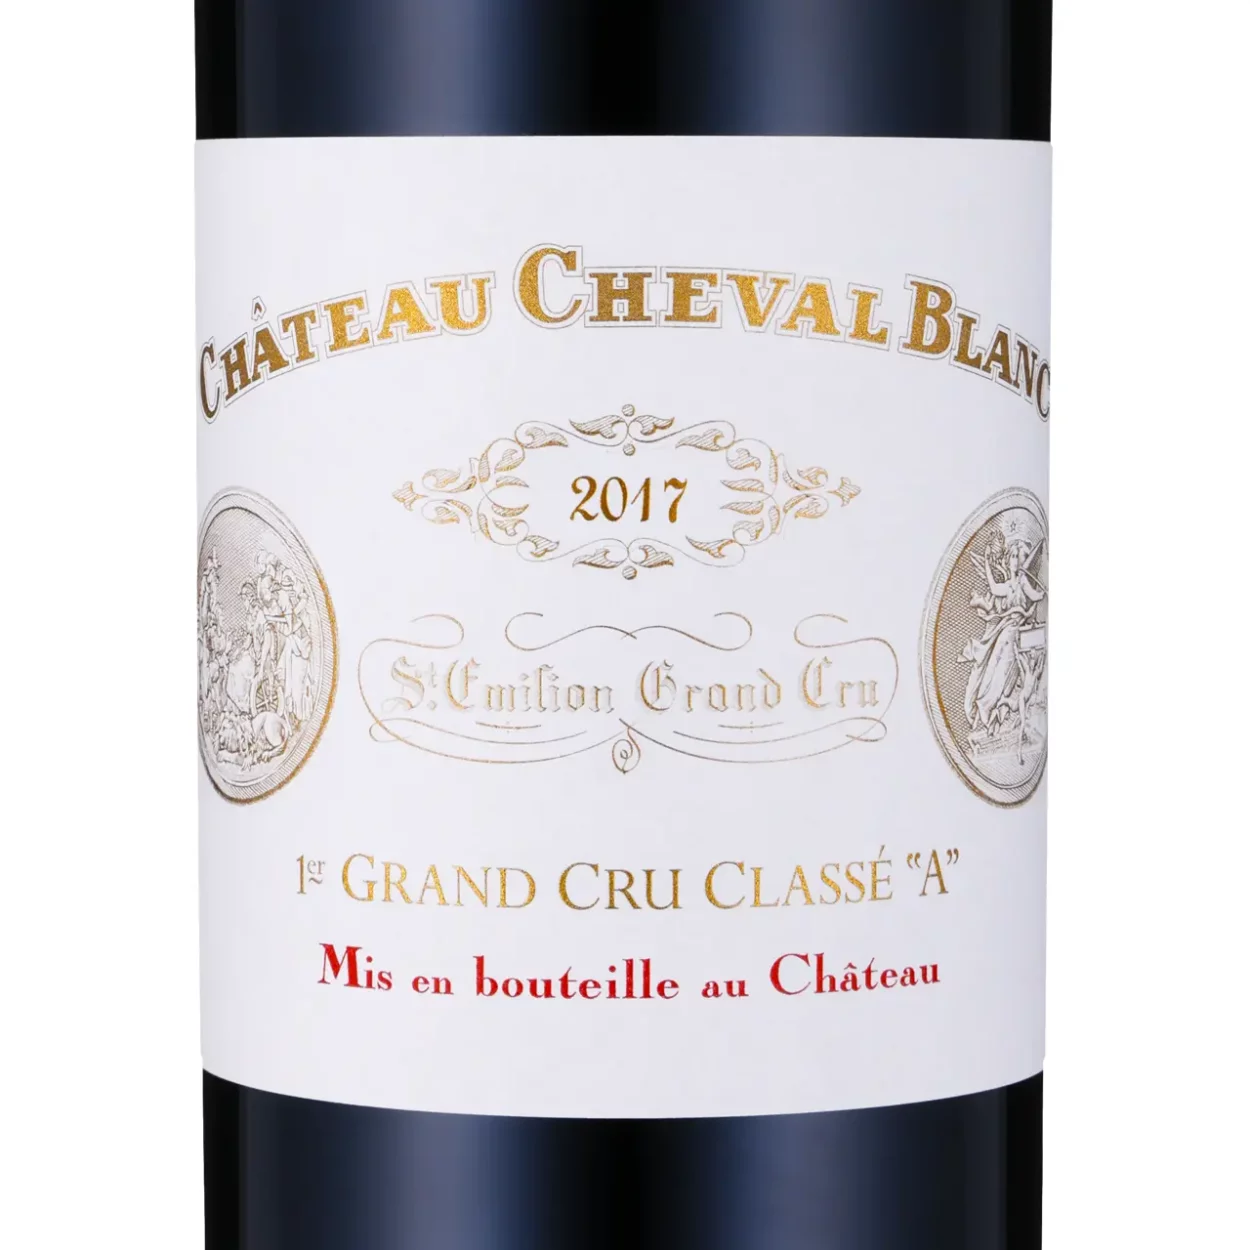 Château Cheval Blanc 1er Grand Cru Classé A 2017